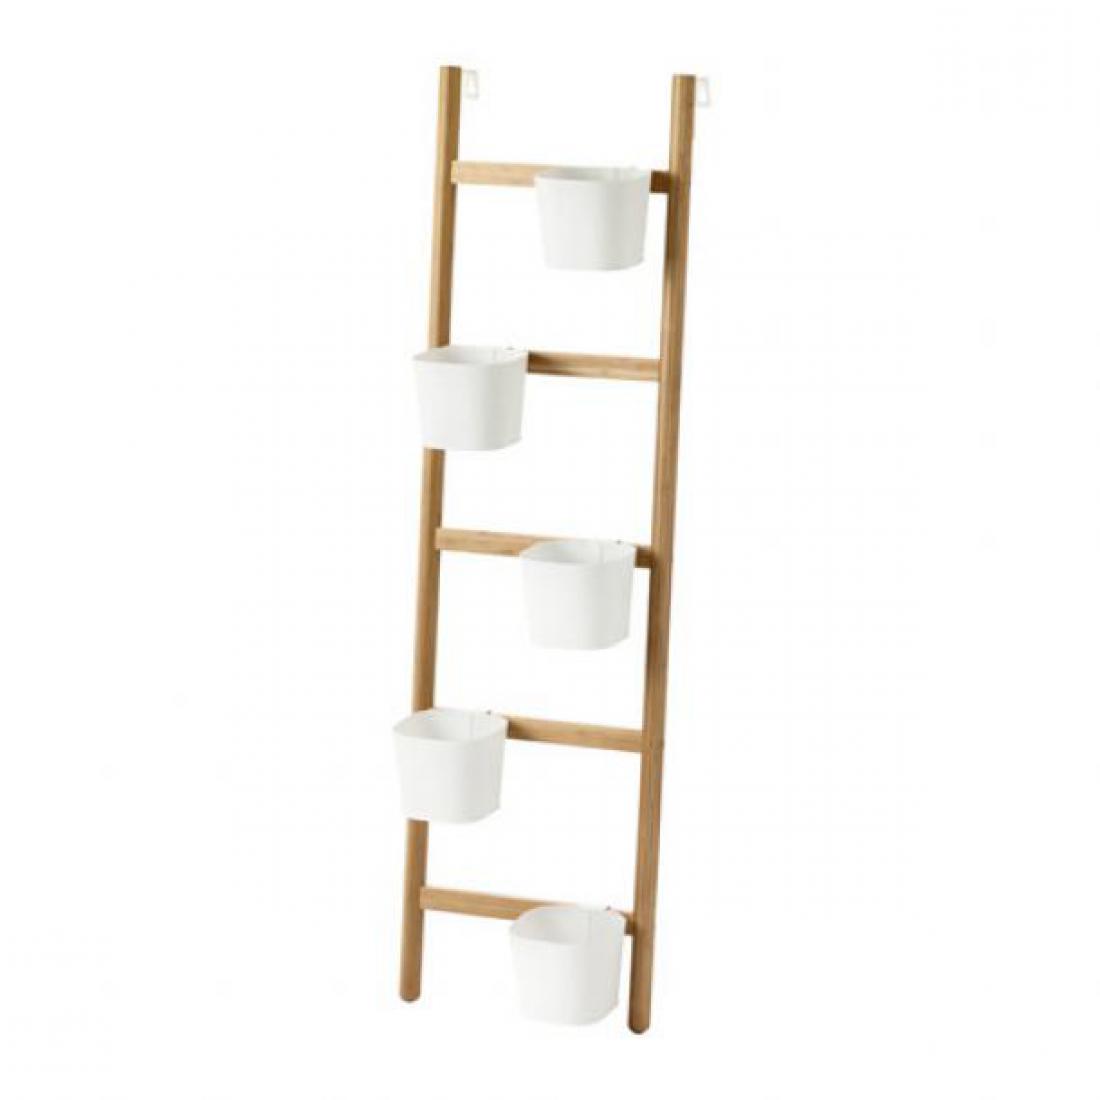 Plezalke se bodo najlepše razgalile po lestvi, ki jo lahko naslonite na balkonsko steno.  Ikea, 44,99 evra 